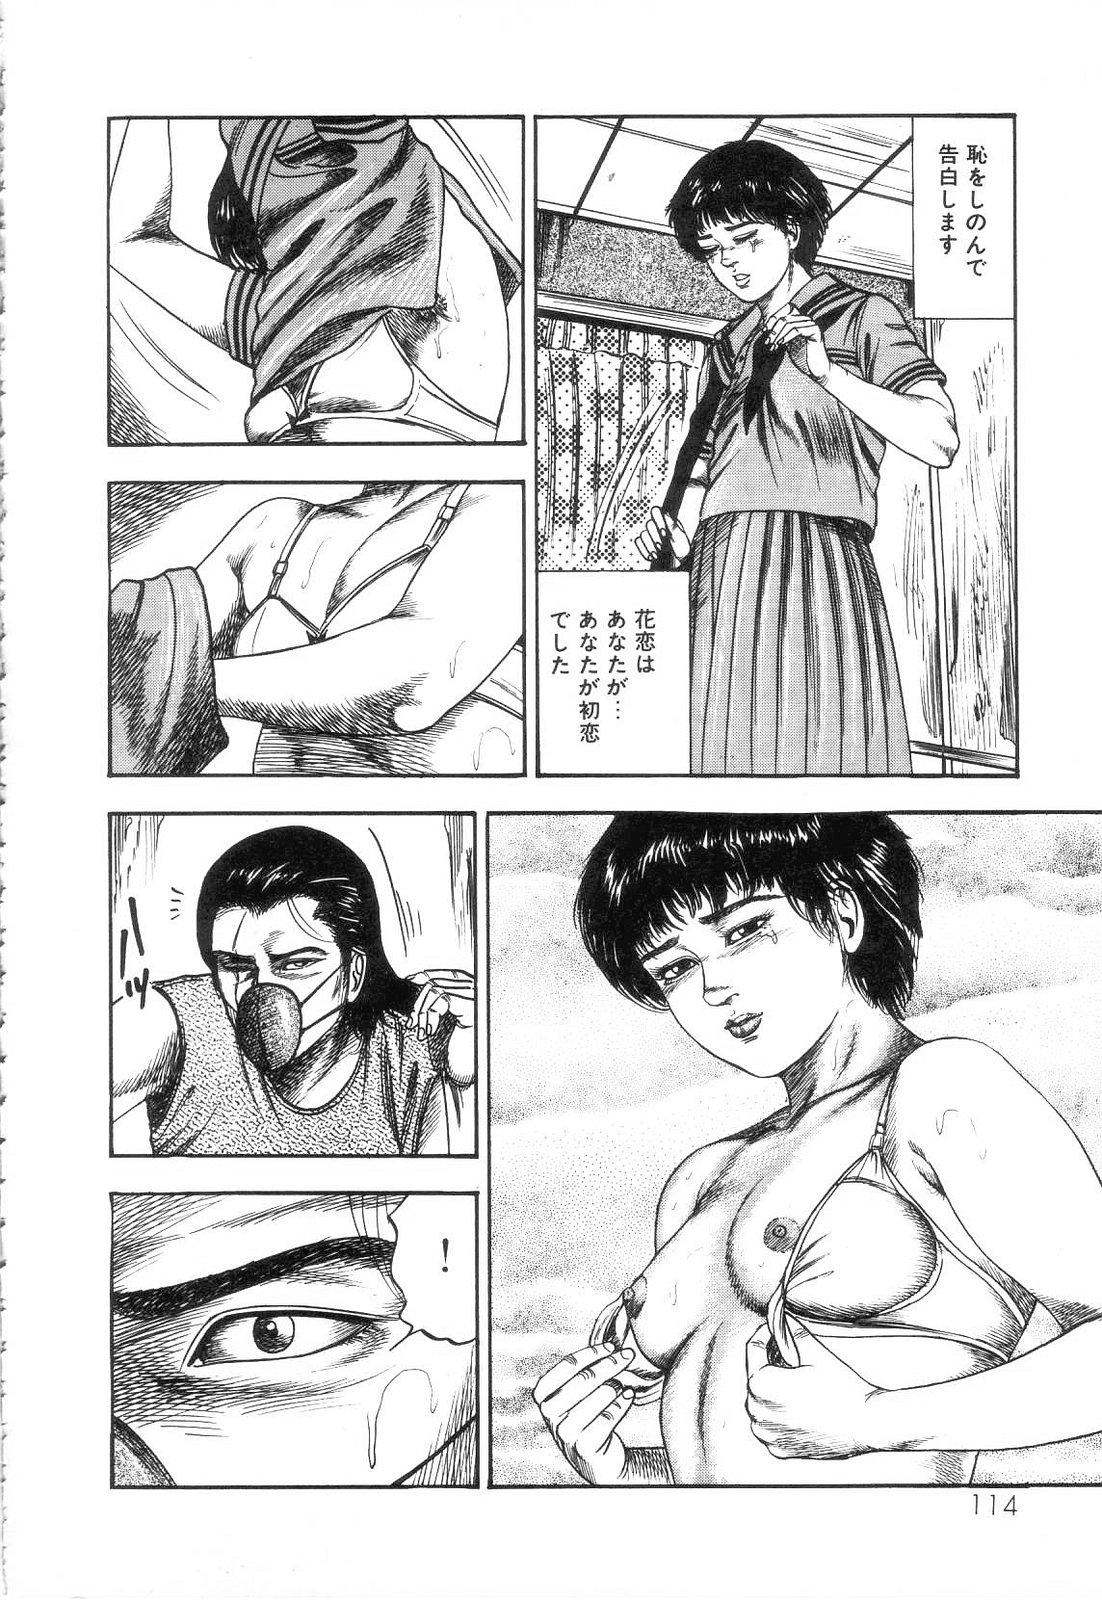 Shiro no Mokushiroku Vol. 3 - Reisai Miho Hen 115